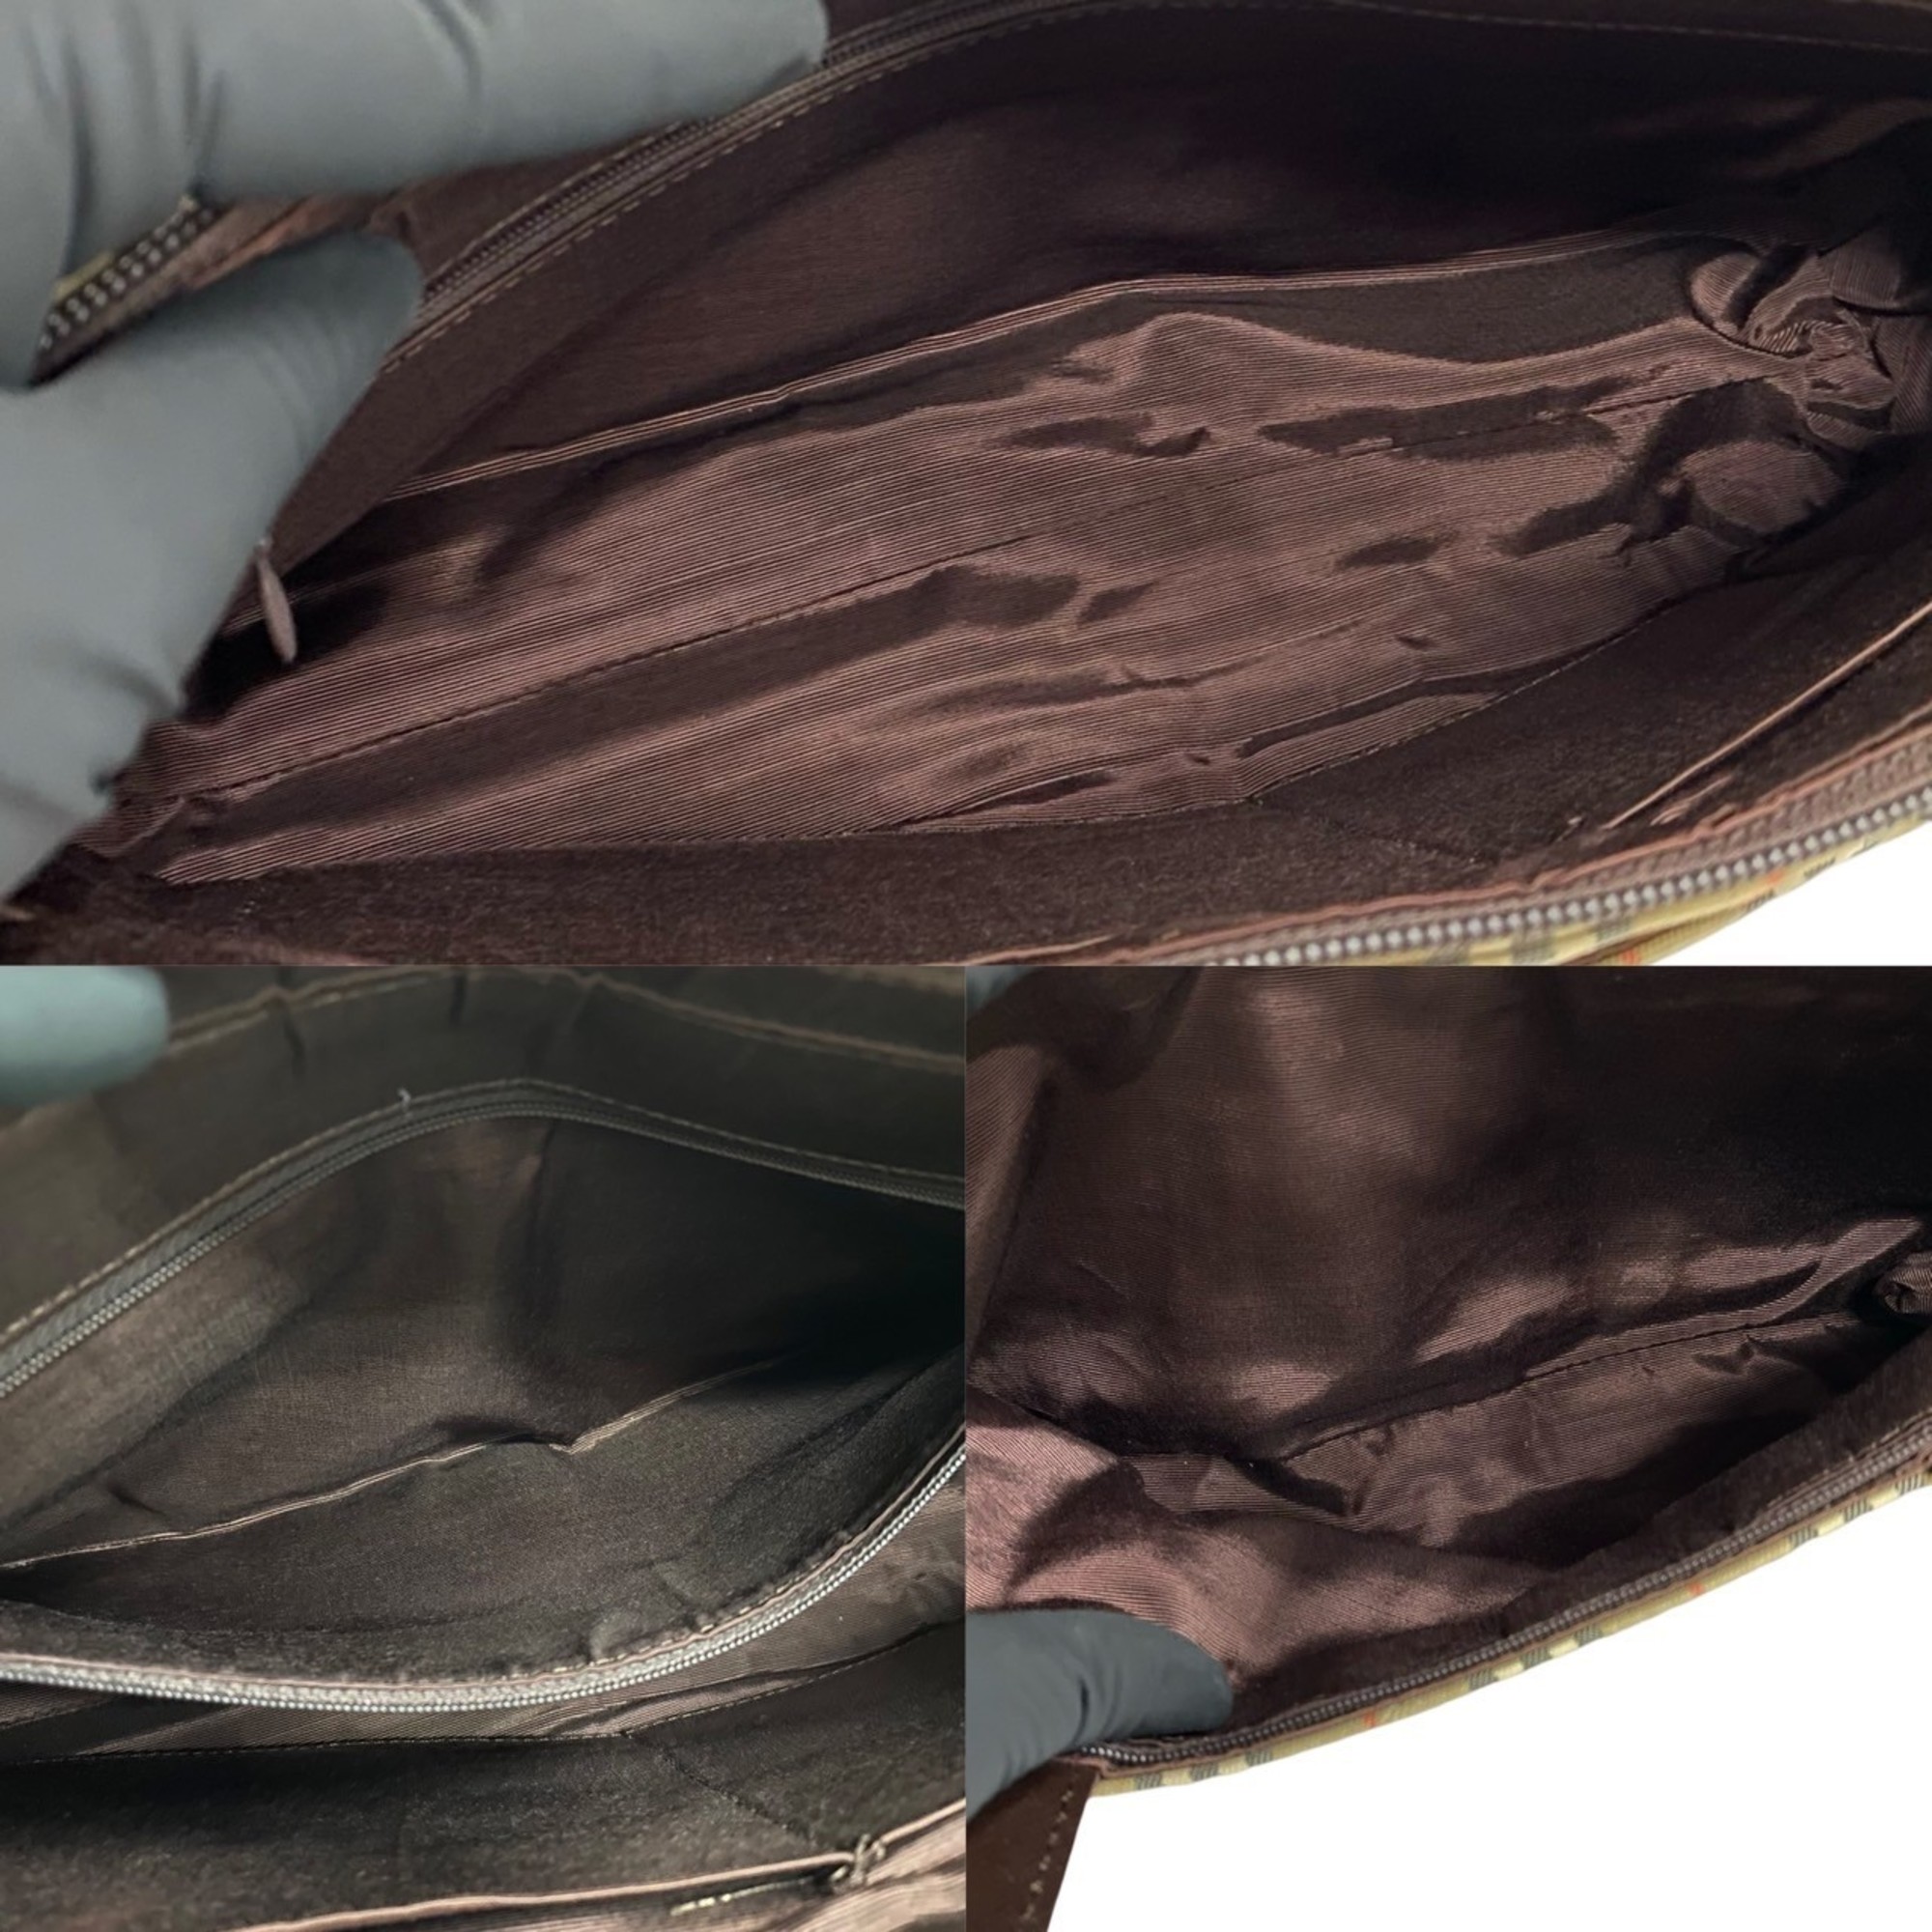 Burberrys Nova Check Leather Canvas Handbag Tote Bag Brown 30072